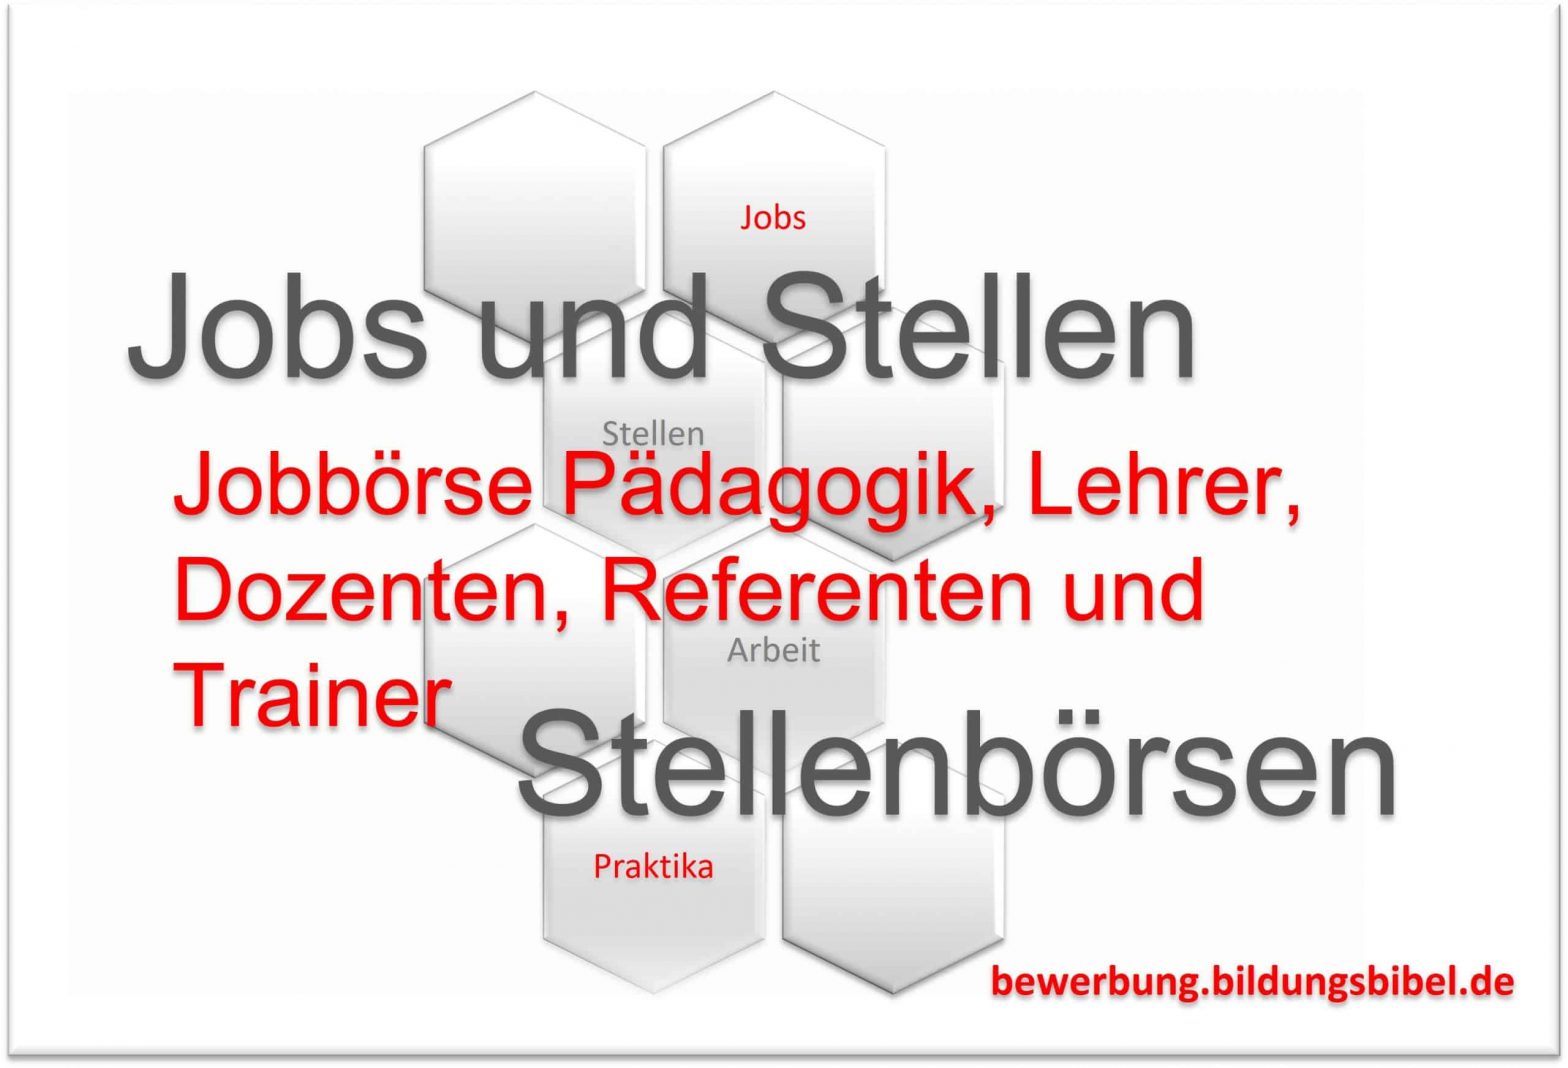 Jobbörse Pädagogik, Lehrer, Dozenten und Sozialpädagogen, Referenten Jobs, Jobbörsen für die Weiterbildung und Fortbildung und Pädagogen.